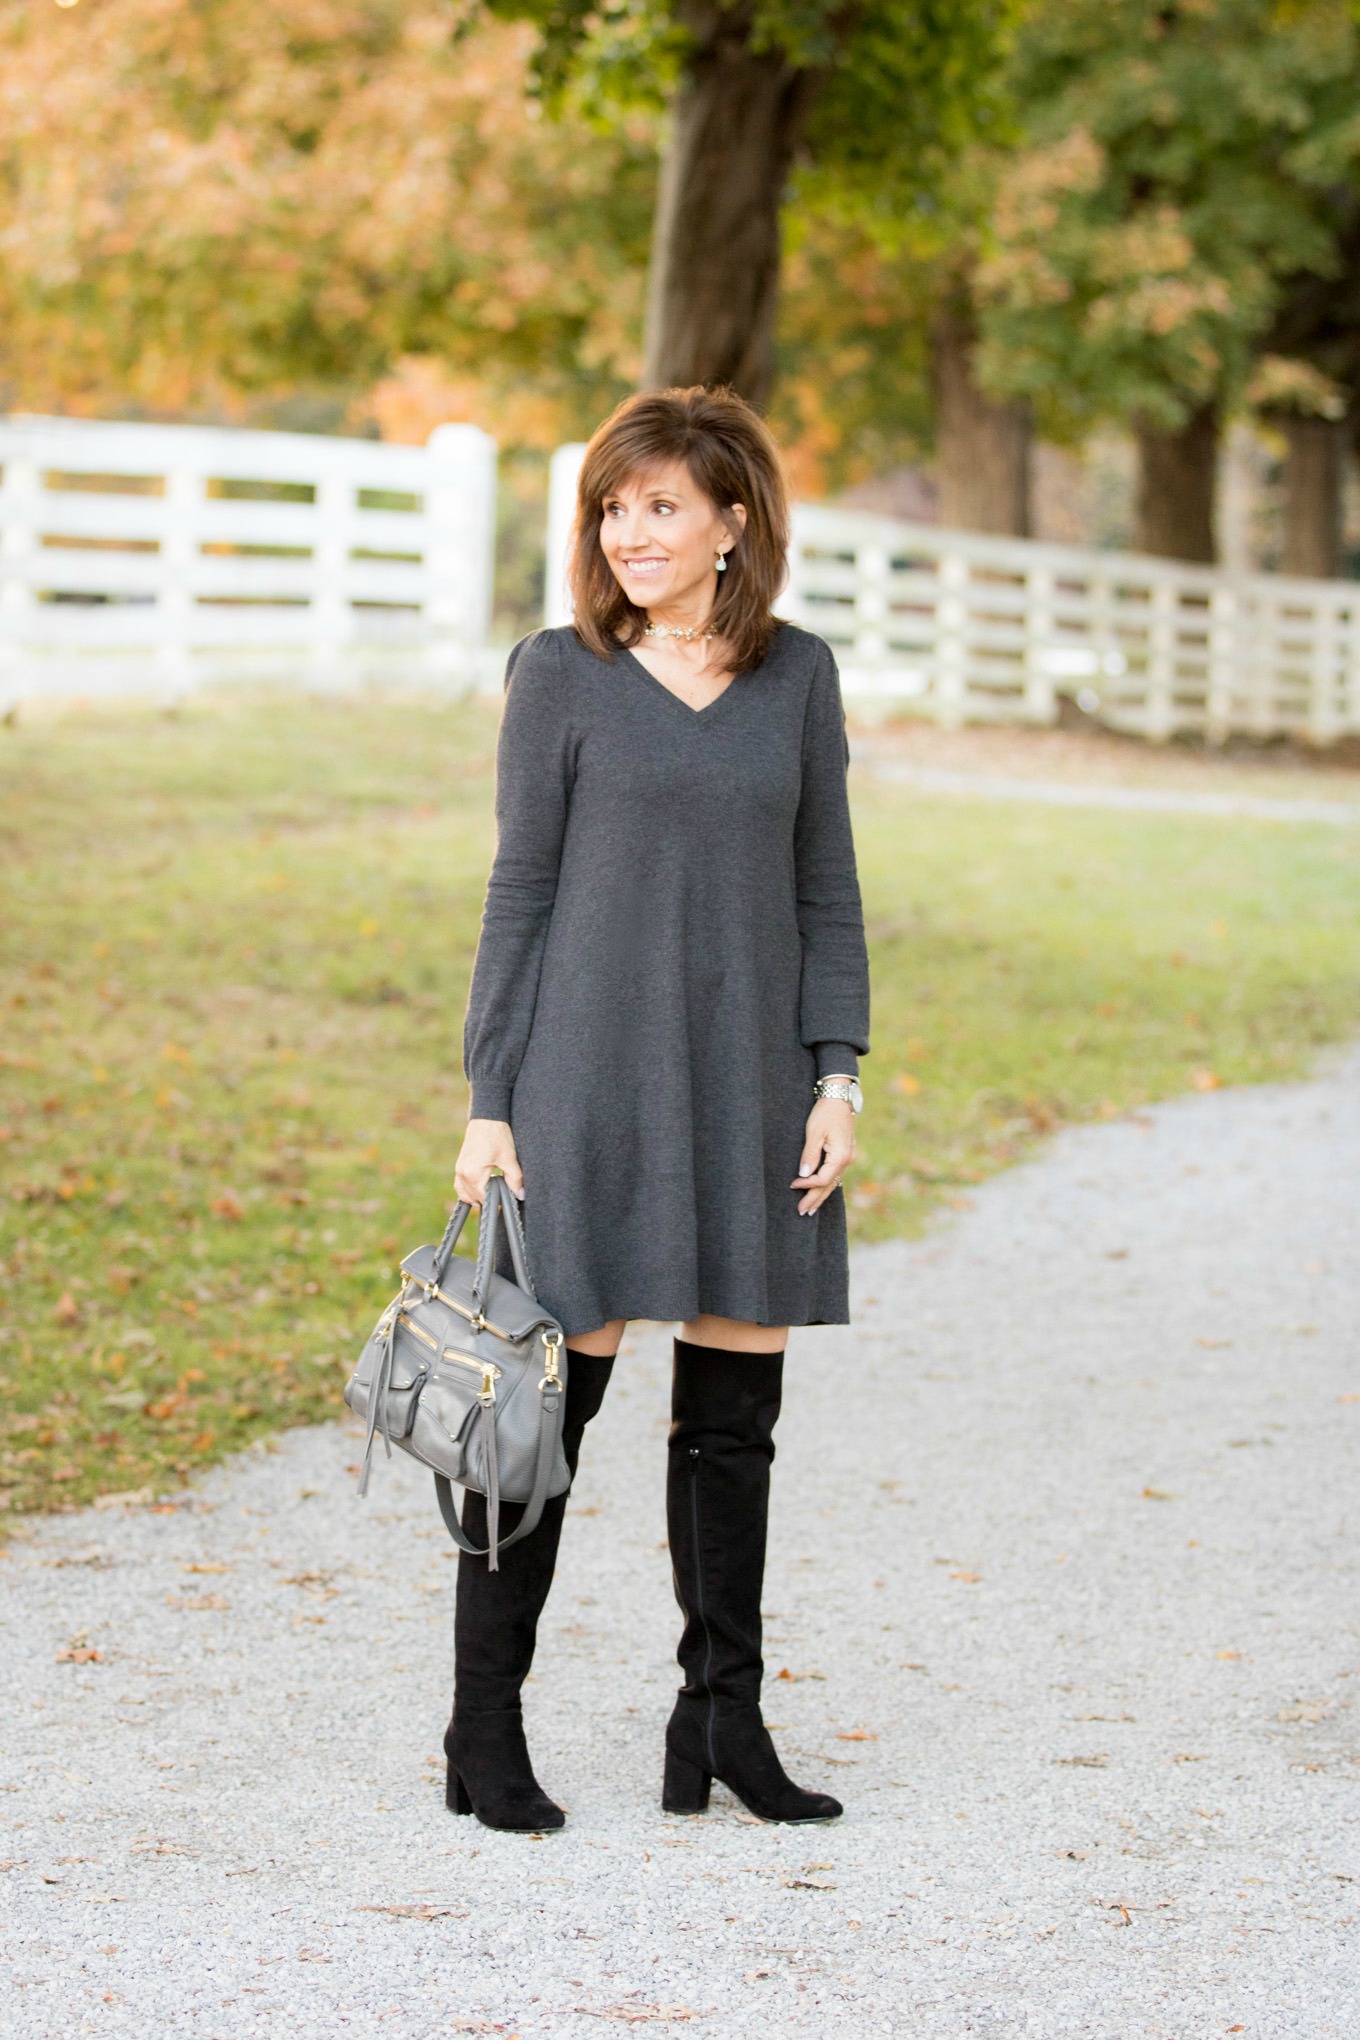 Fashion blogger Cyndi Spivey styling a sweater dress from Loft.